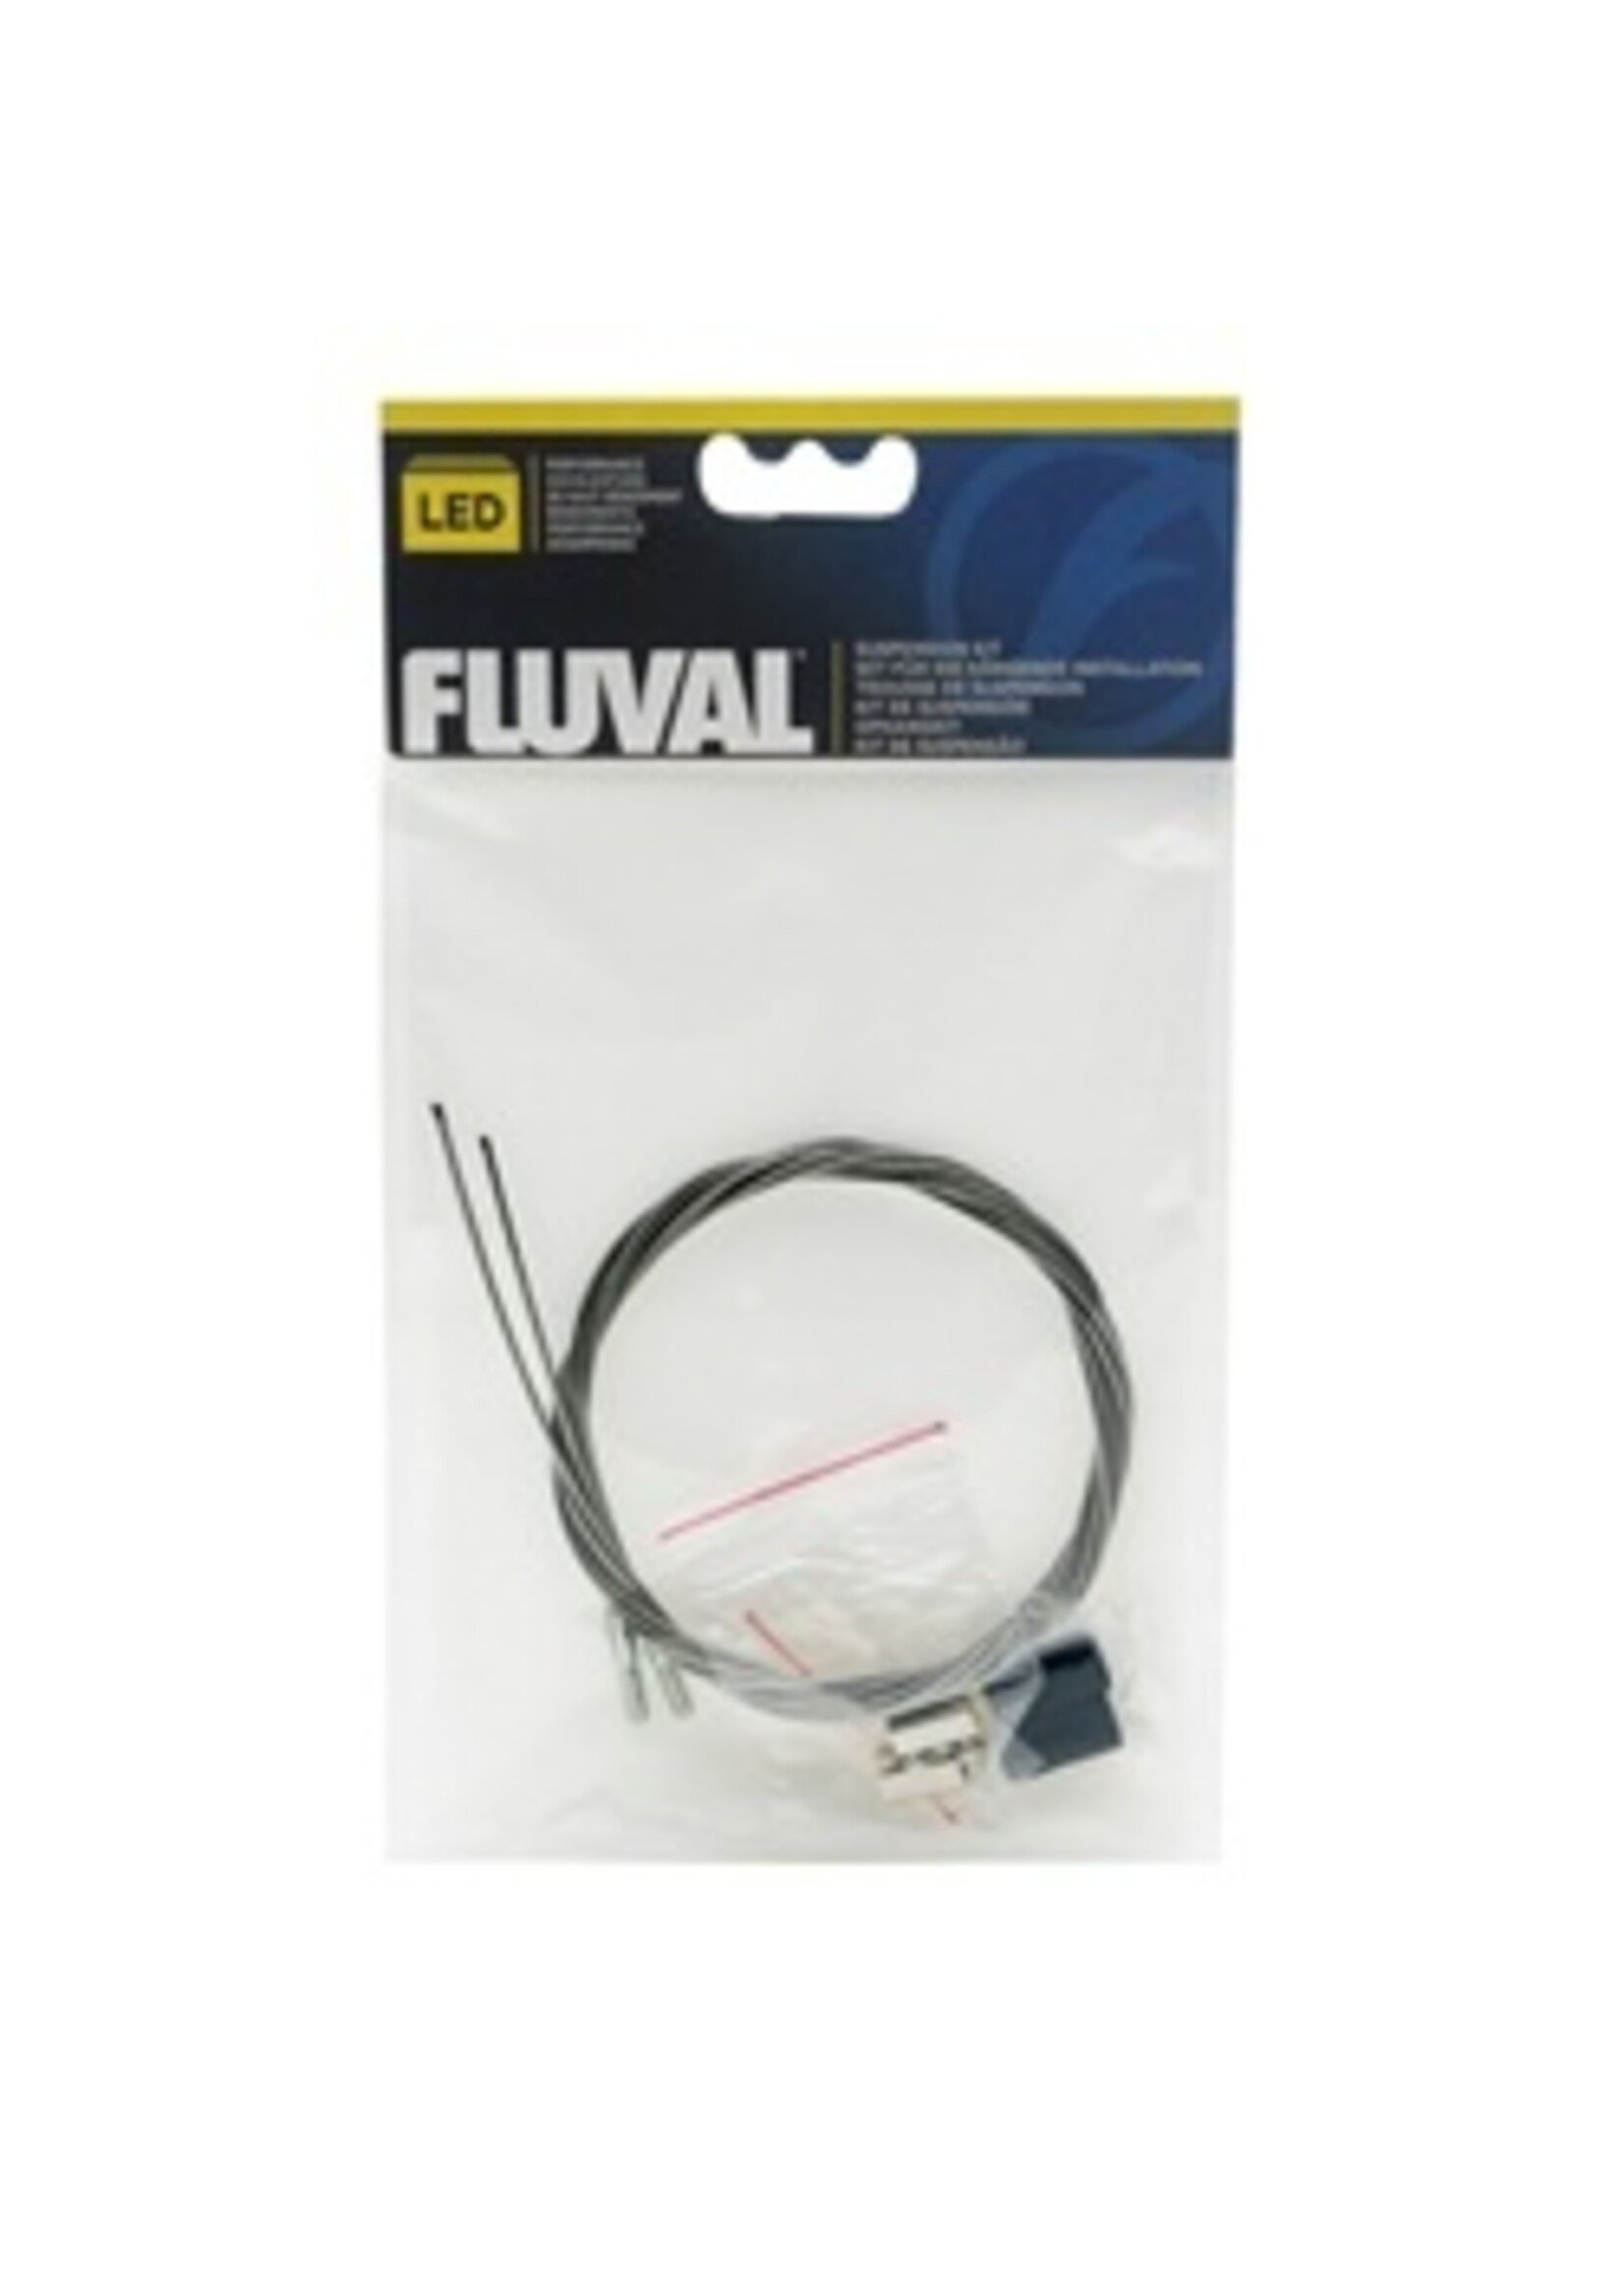 Fluval Fluval LED Suspension Kit A3979